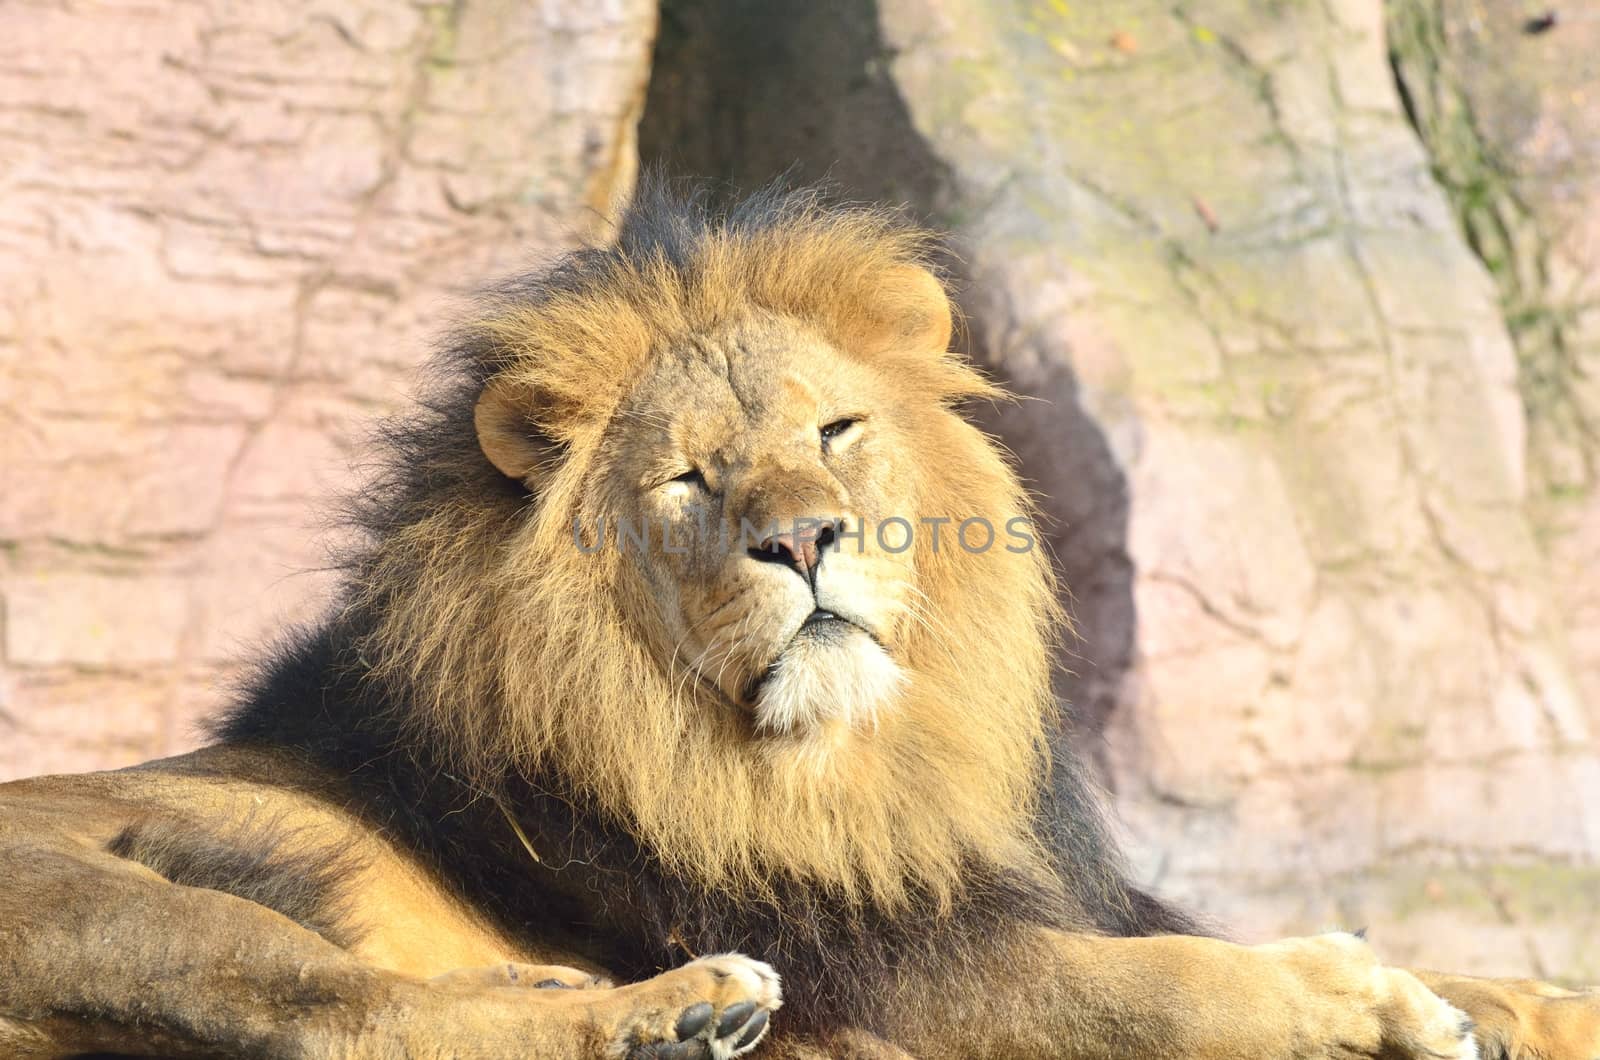 Male Lion by pauws99